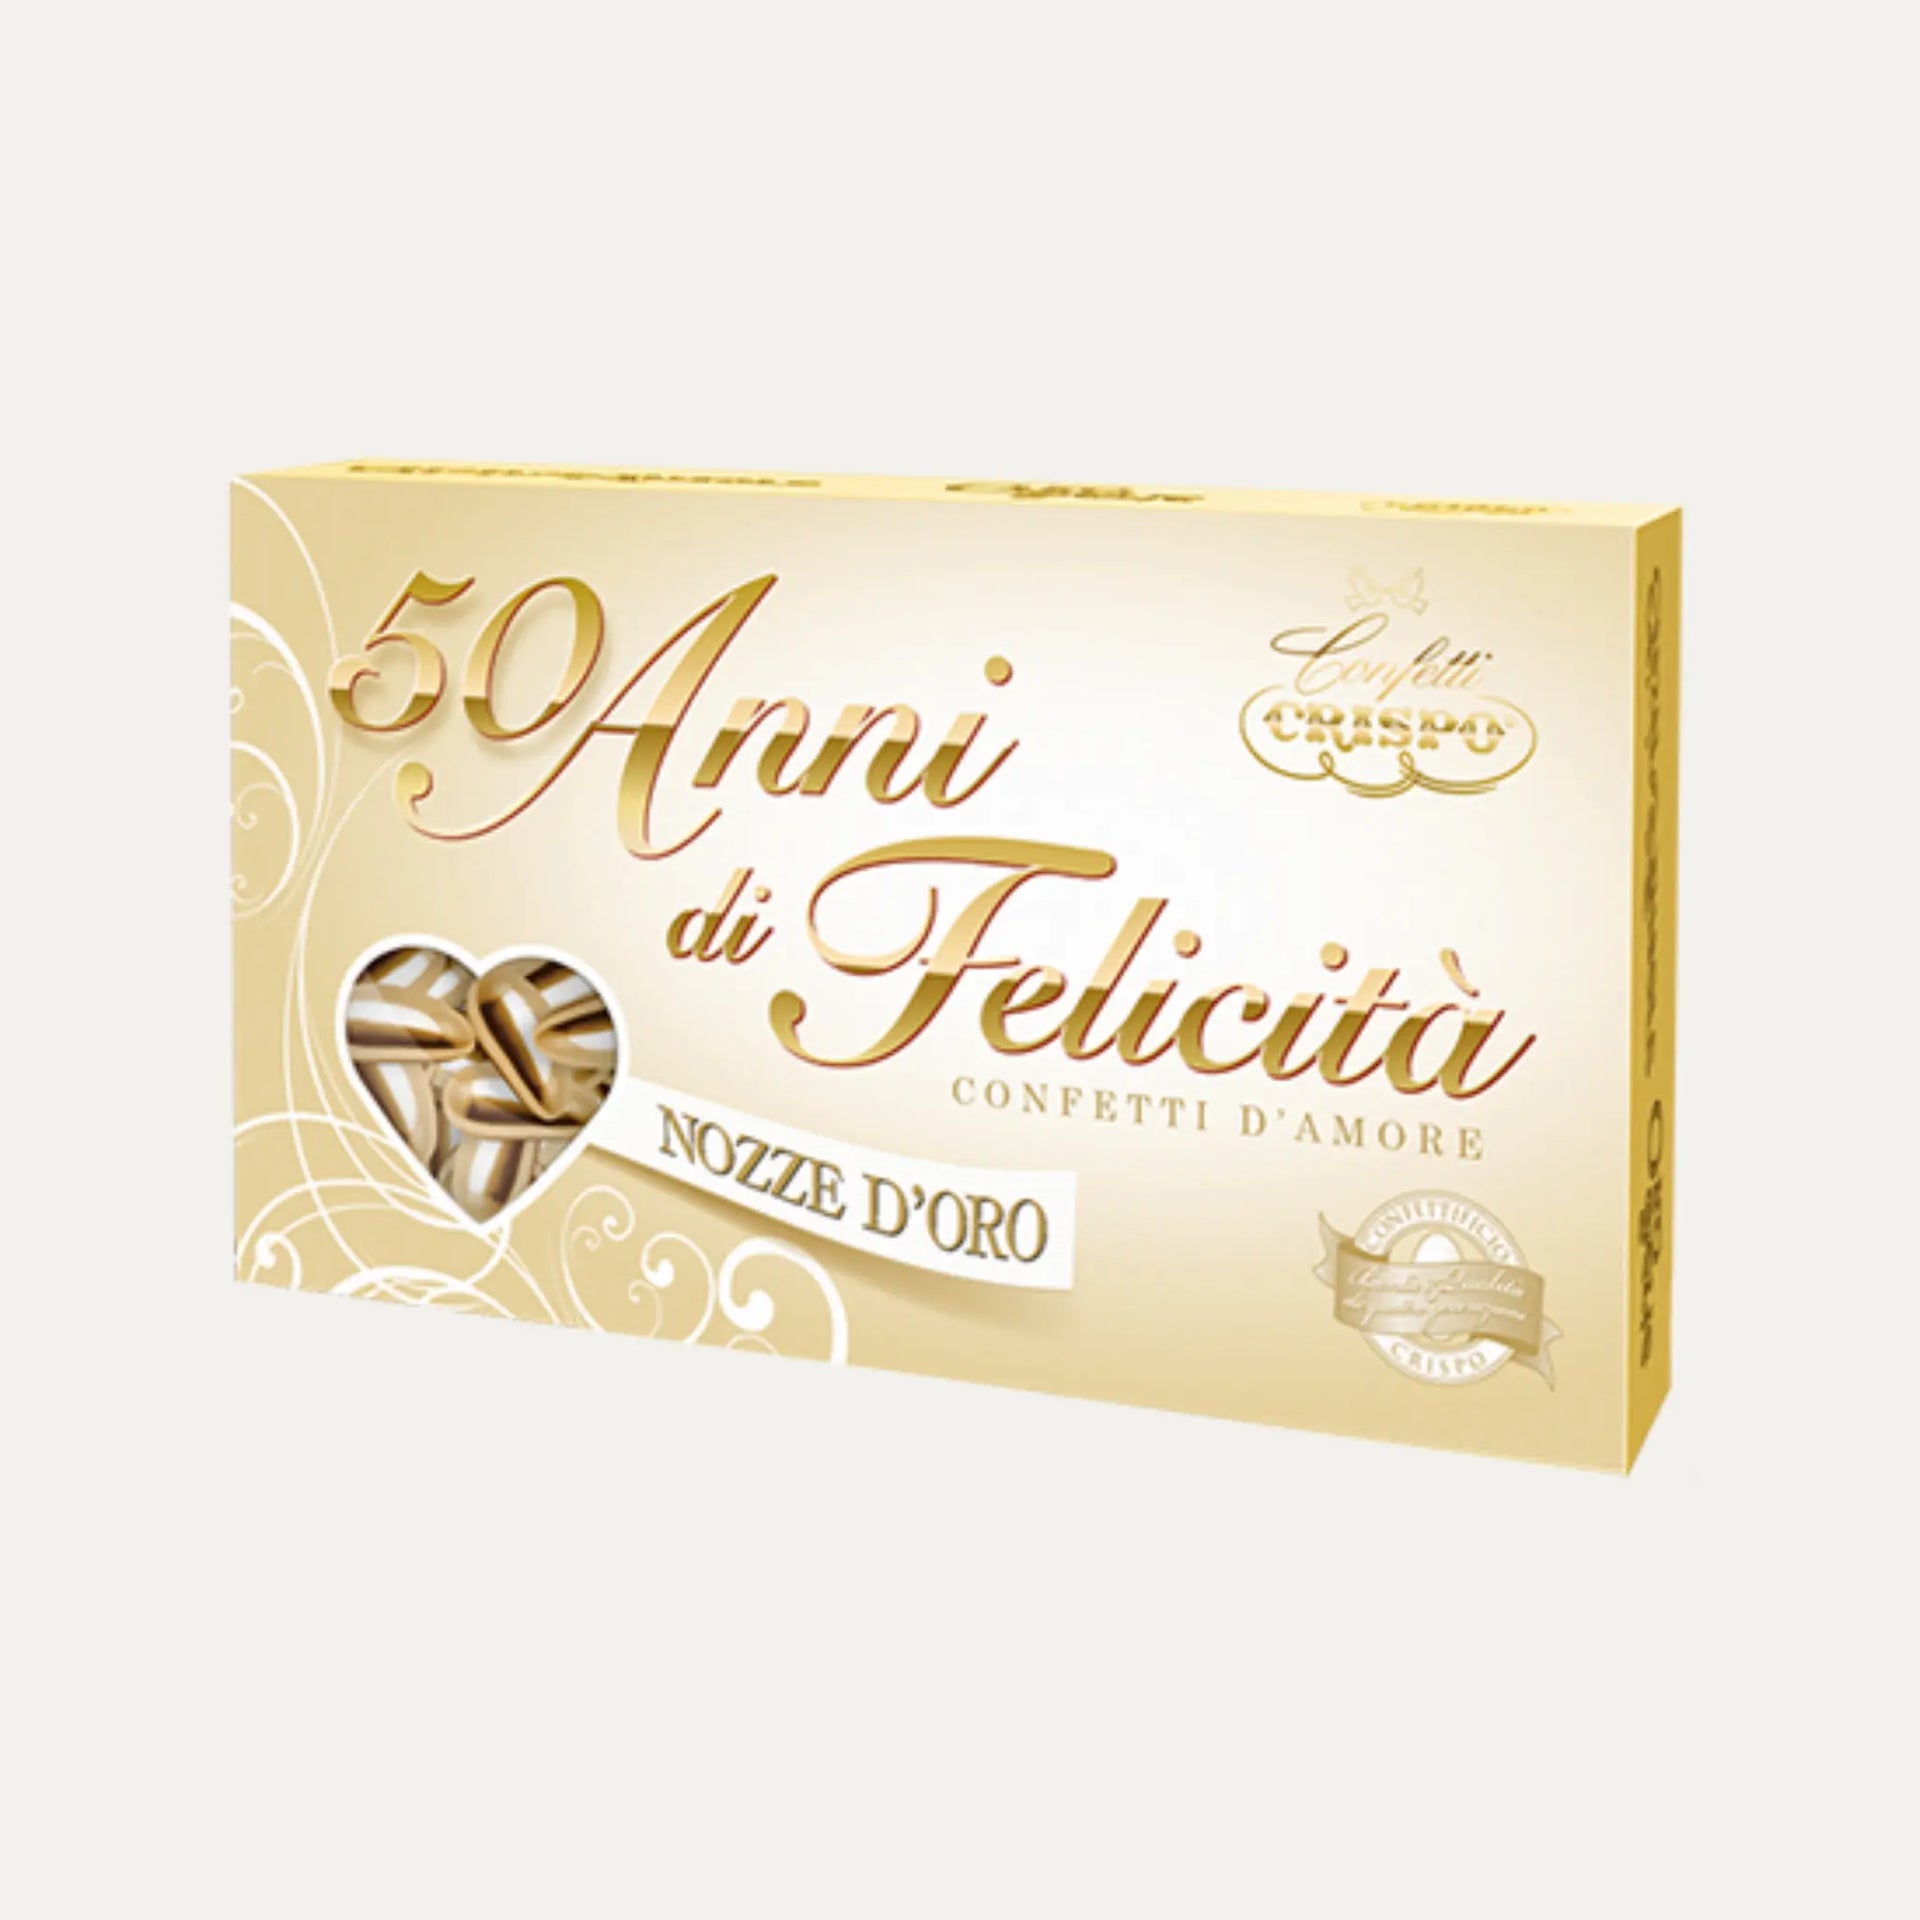 Confetti oro 50 anni  Gran Pasticceria Barbera